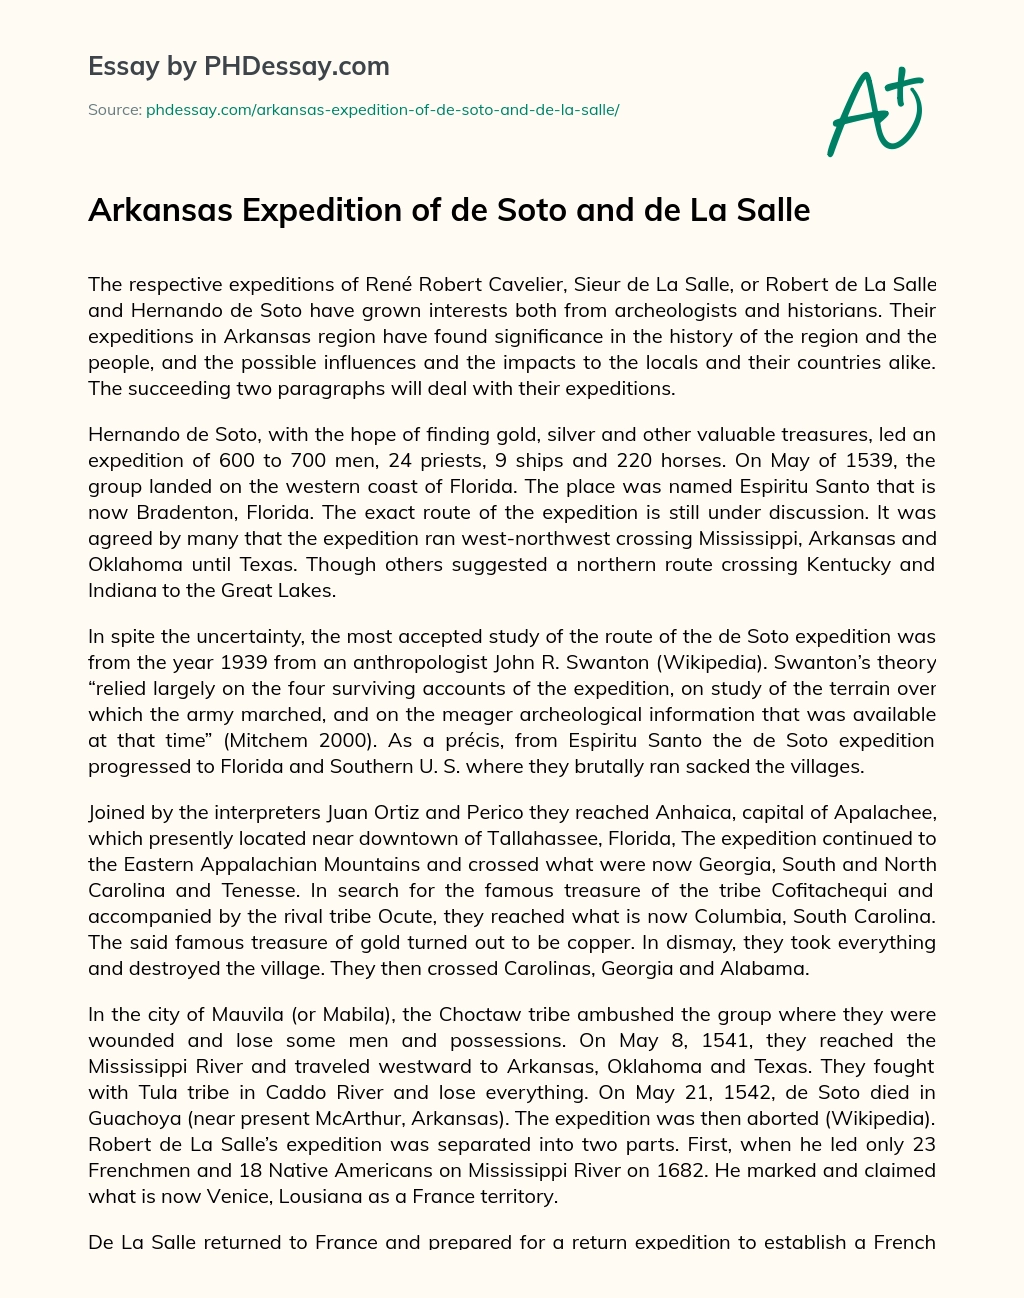 Arkansas Expedition of de Soto and de La Salle essay